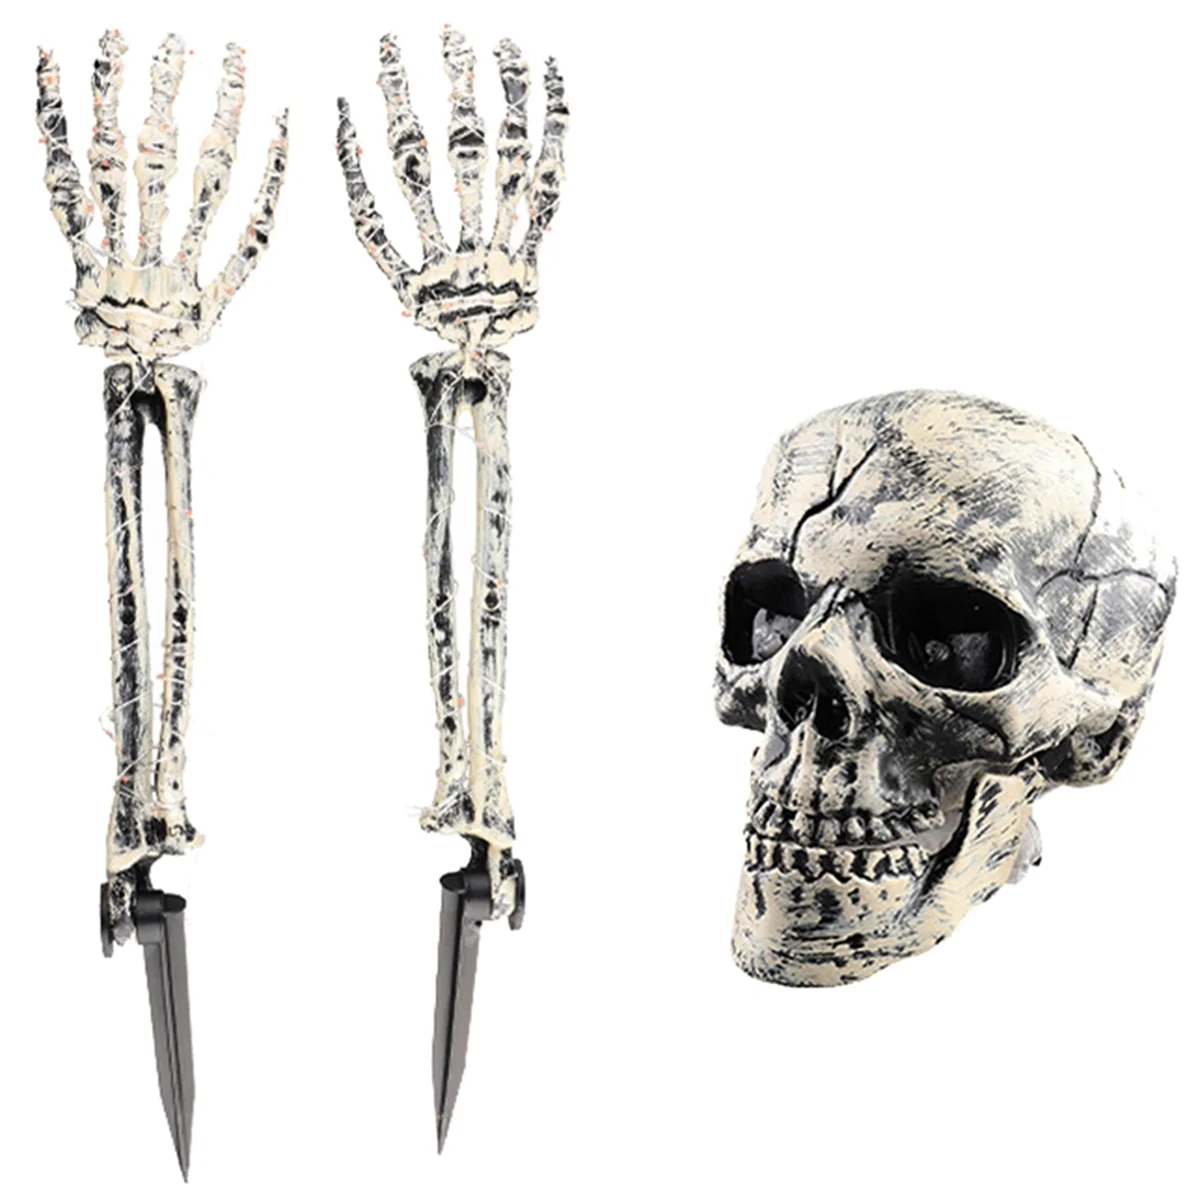 

Реалистичные стойки-скелеты для украшения на Хэллоуин, украшение для сада, украшение для Хэллоуина